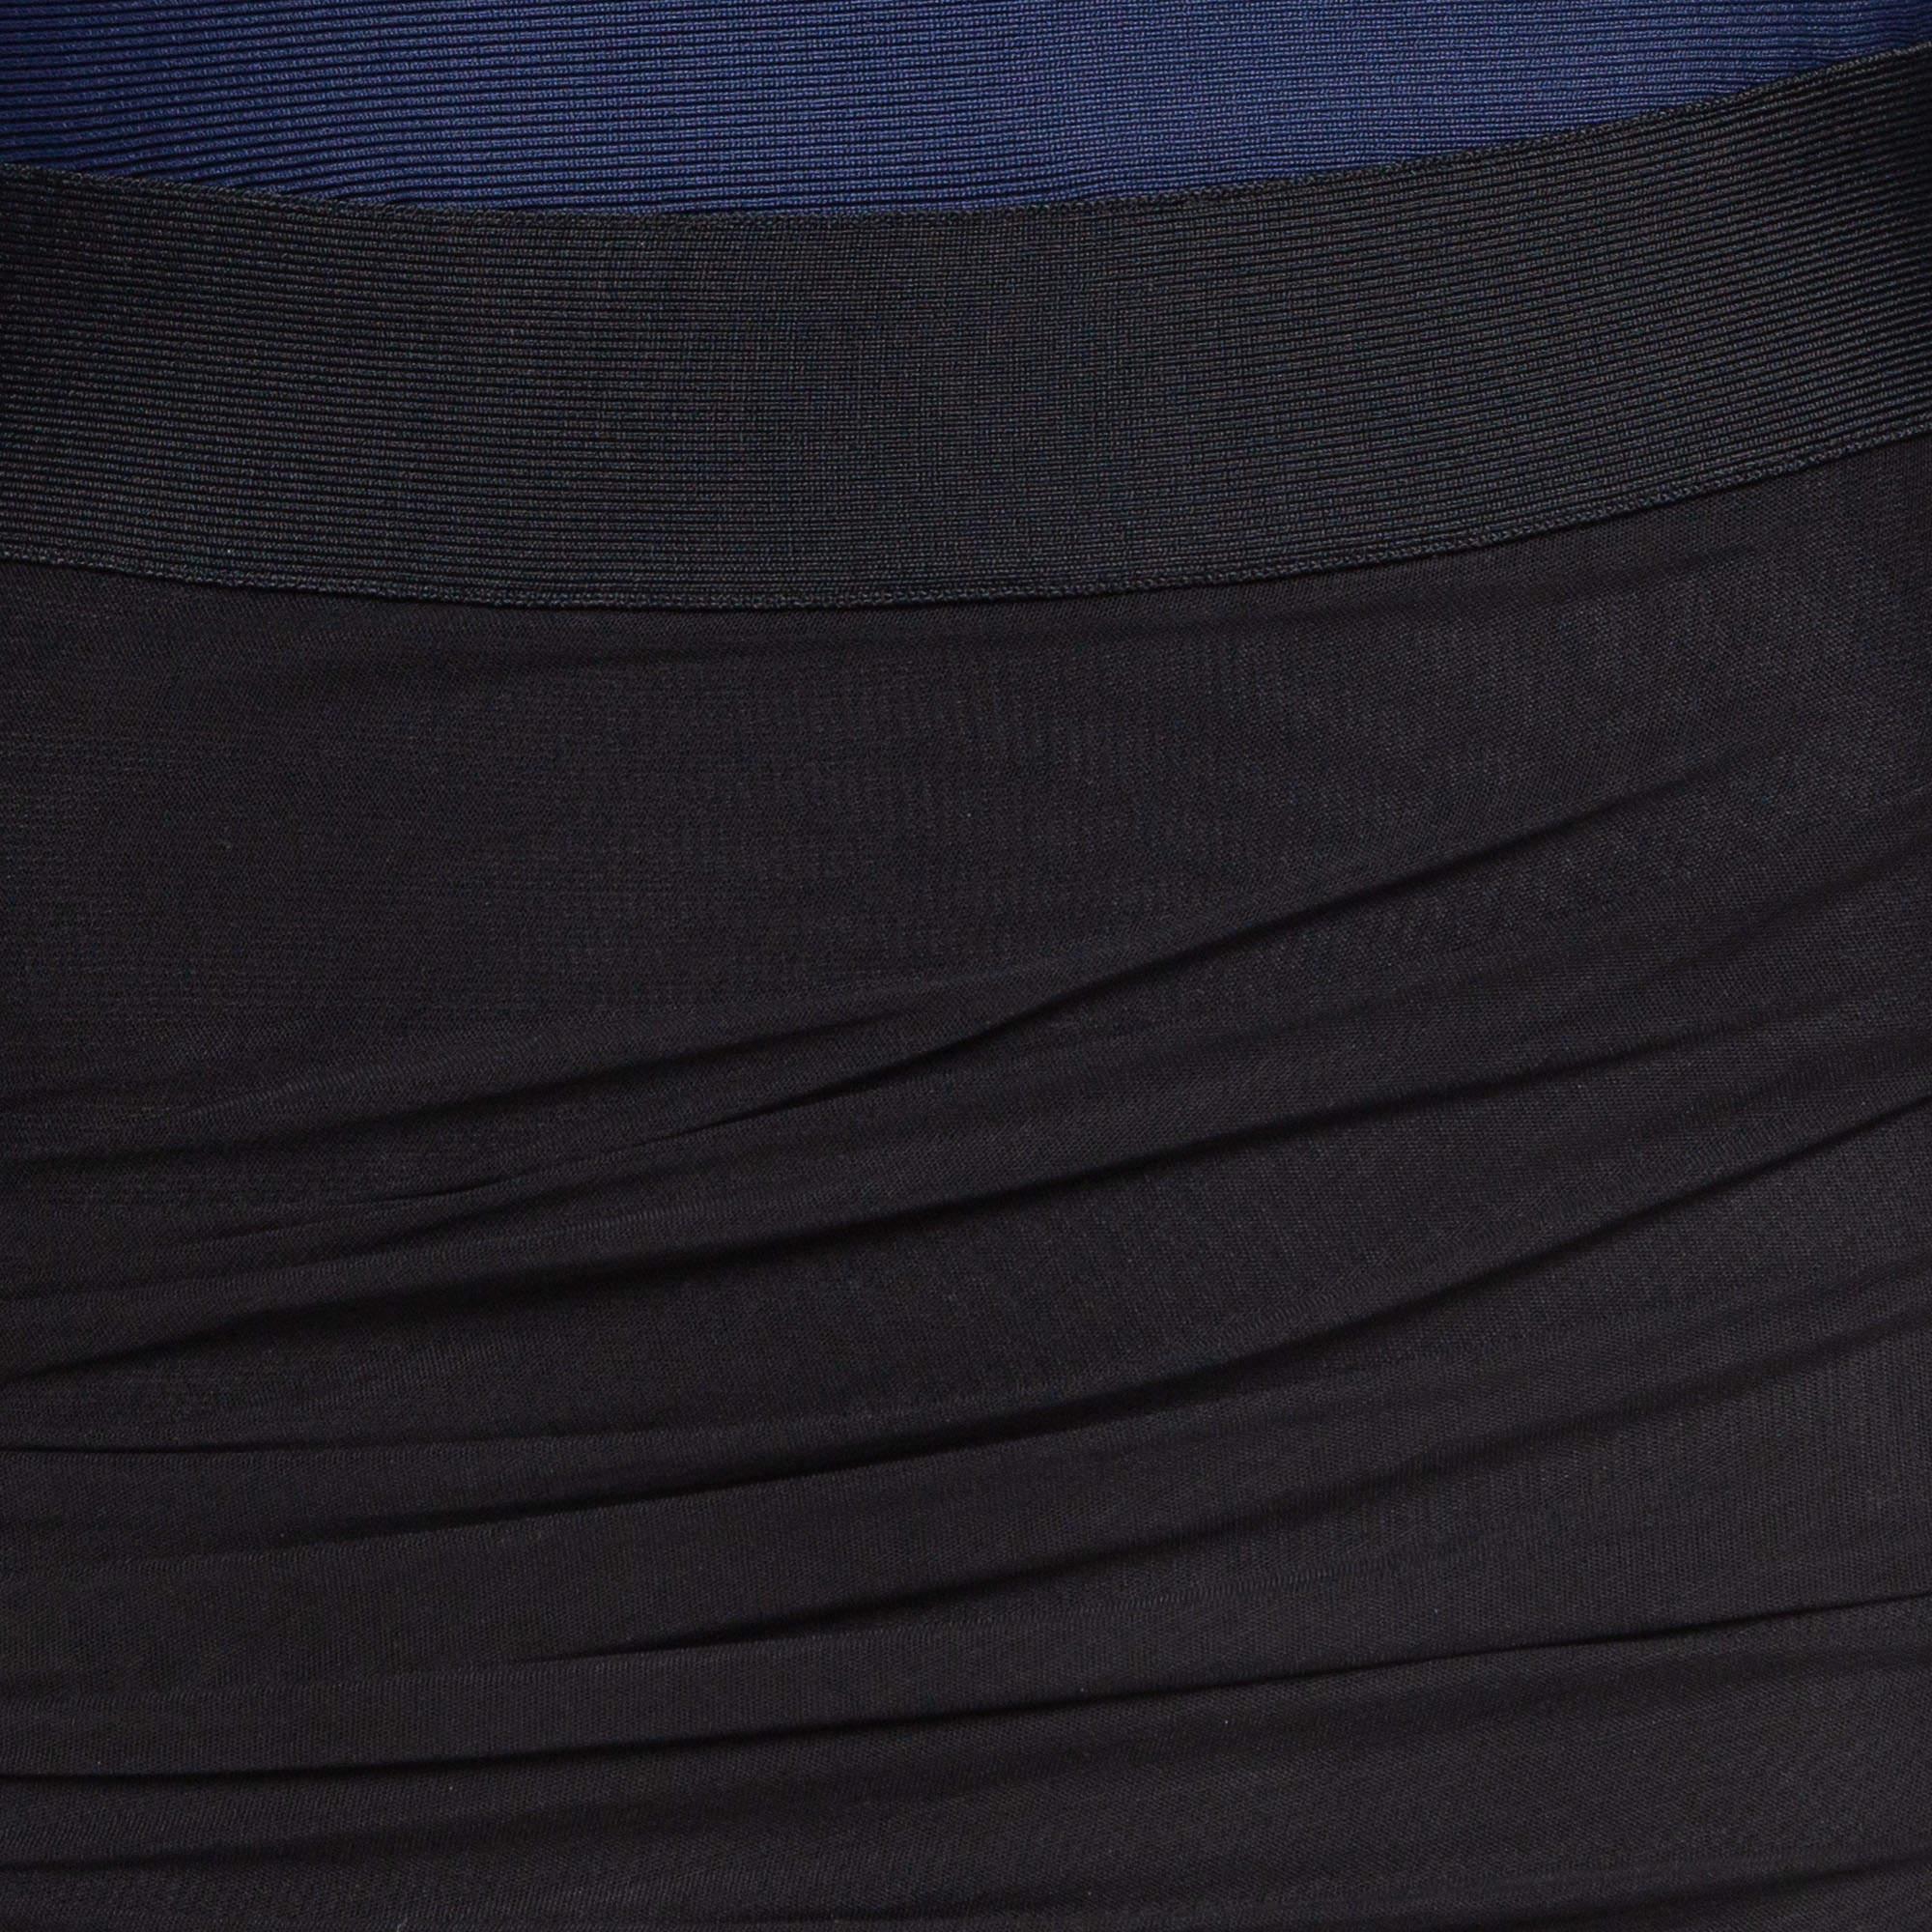 Herve Leger Navy Blue/Black Mesh Trim Knit Ruched Bandage Dress L For Sale 3